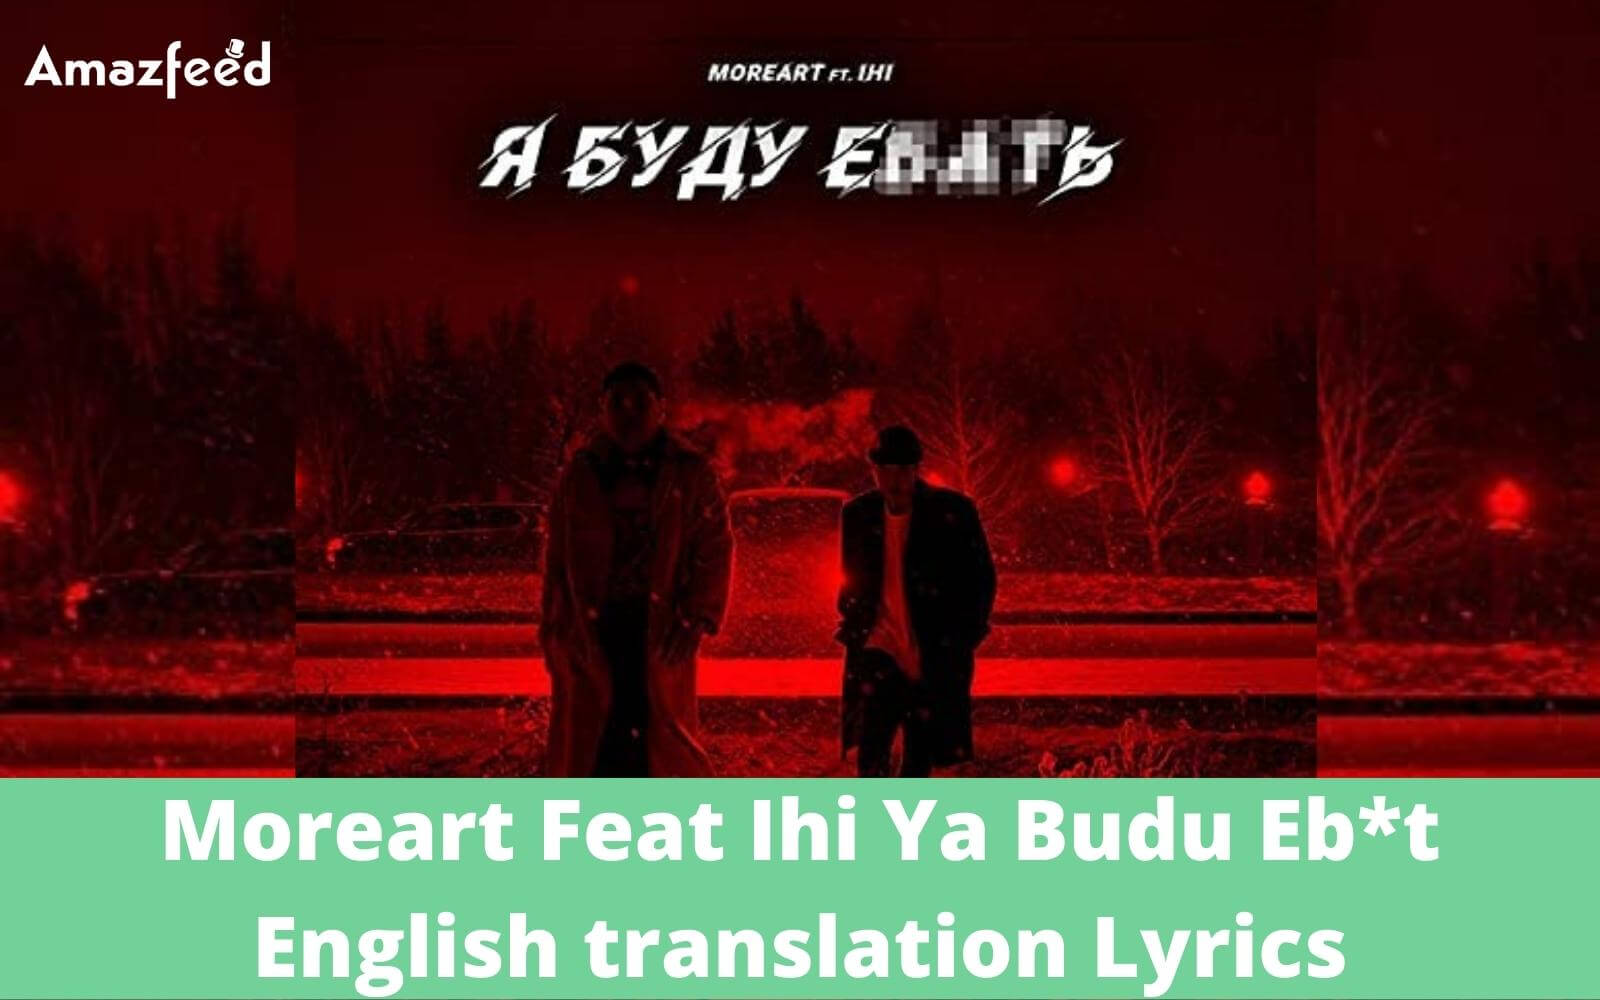 Moreart Feat Ihi Ya Budu Eb*t English translation Lyrics